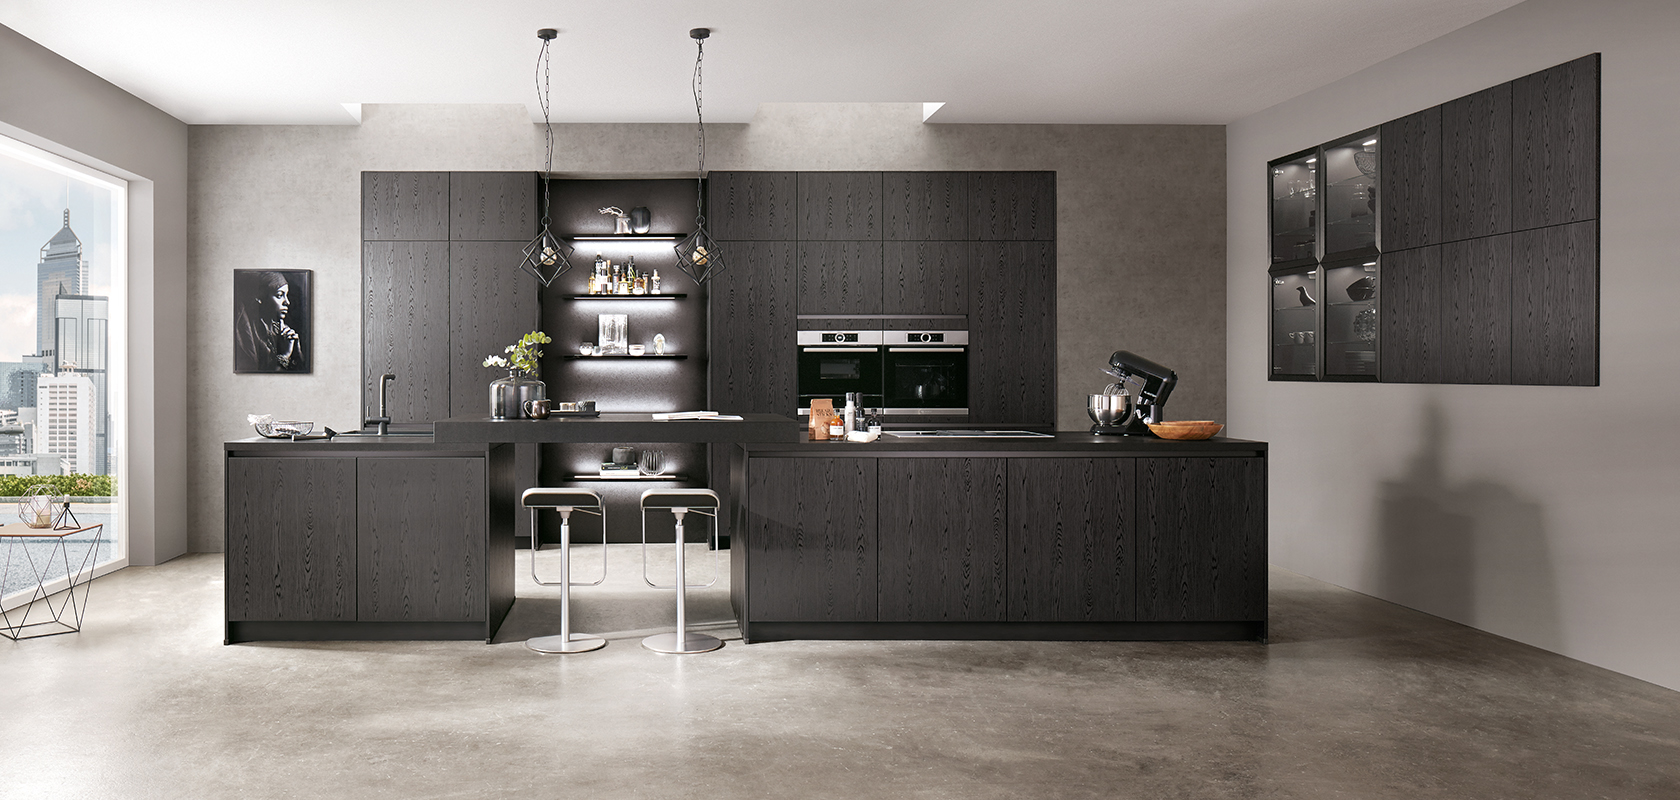 Nowoczesny design kuchni z eleganckimi czarnymi szafkami, stalowymi urządzeniami AGD oraz centralną wyspą z taboretami barowymi na tle szarej tekstury betonu.